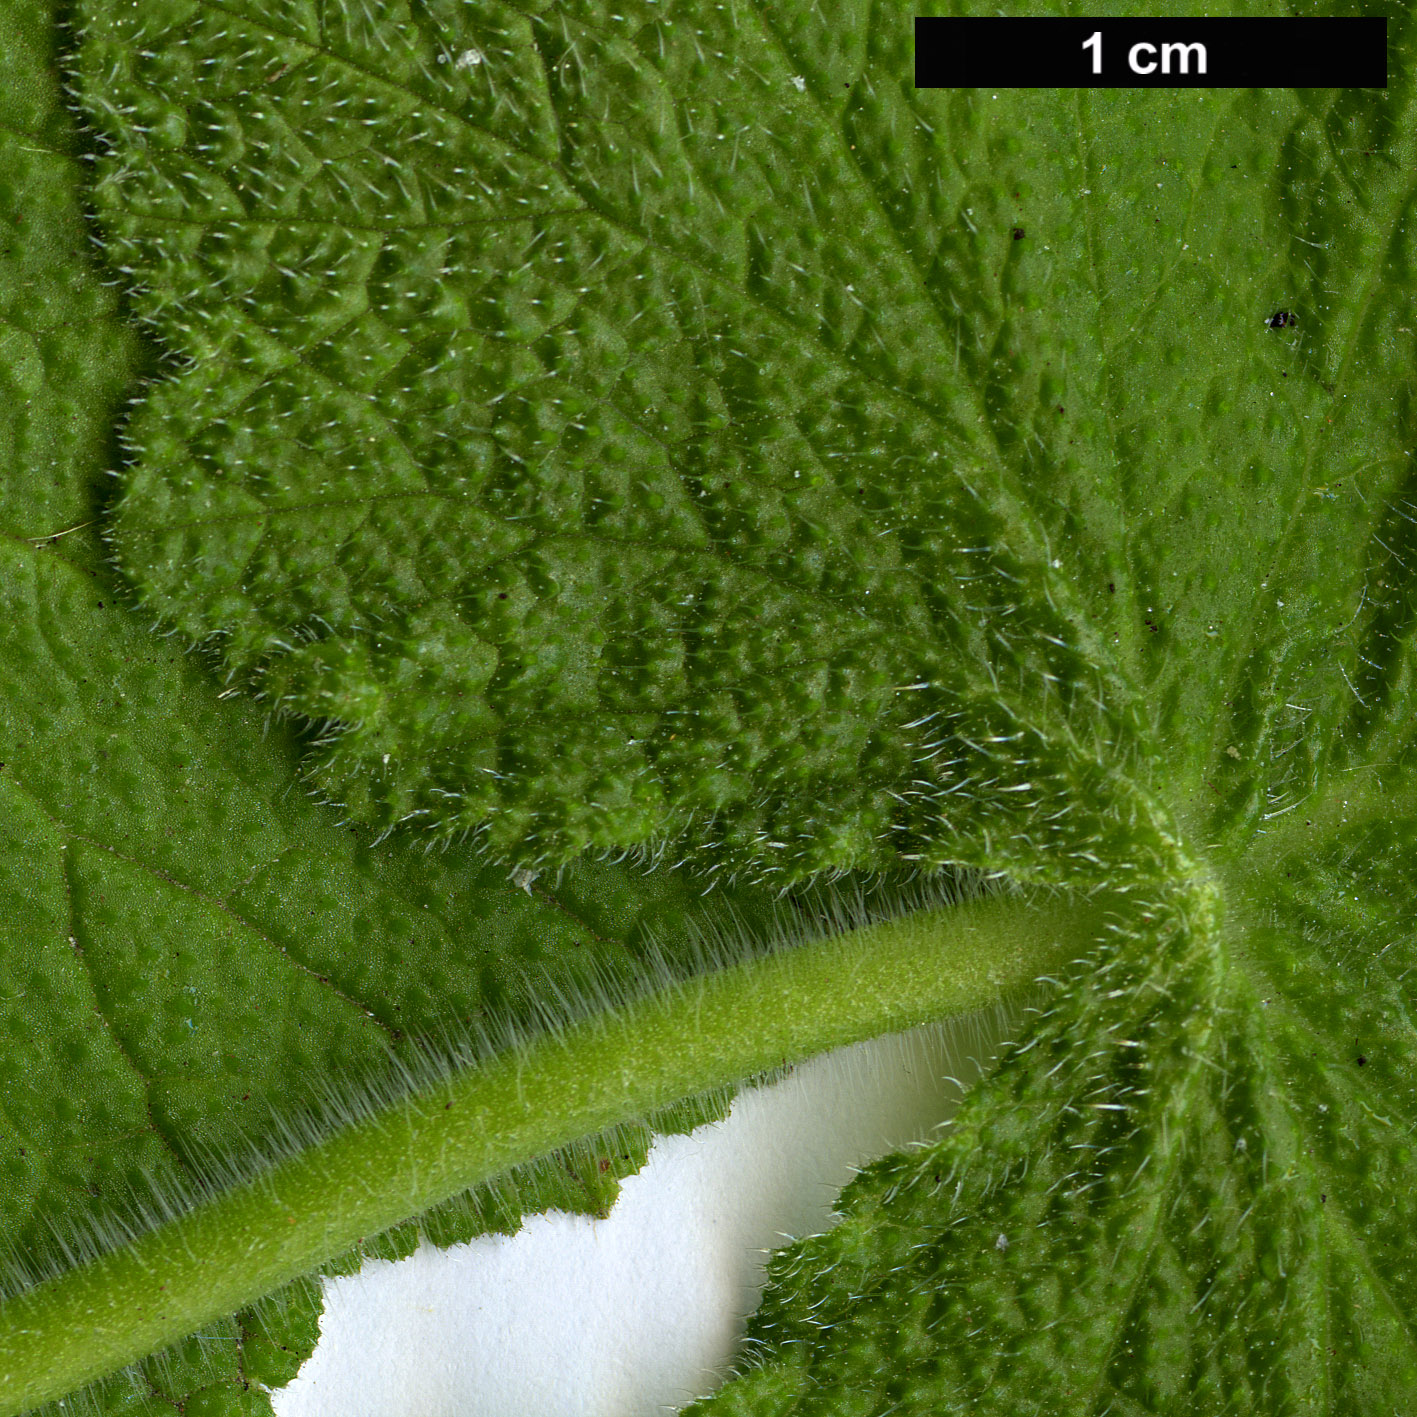 High resolution image: Family: Geraniaceae - Genus: Pelargonium - Taxon: papilionaceum